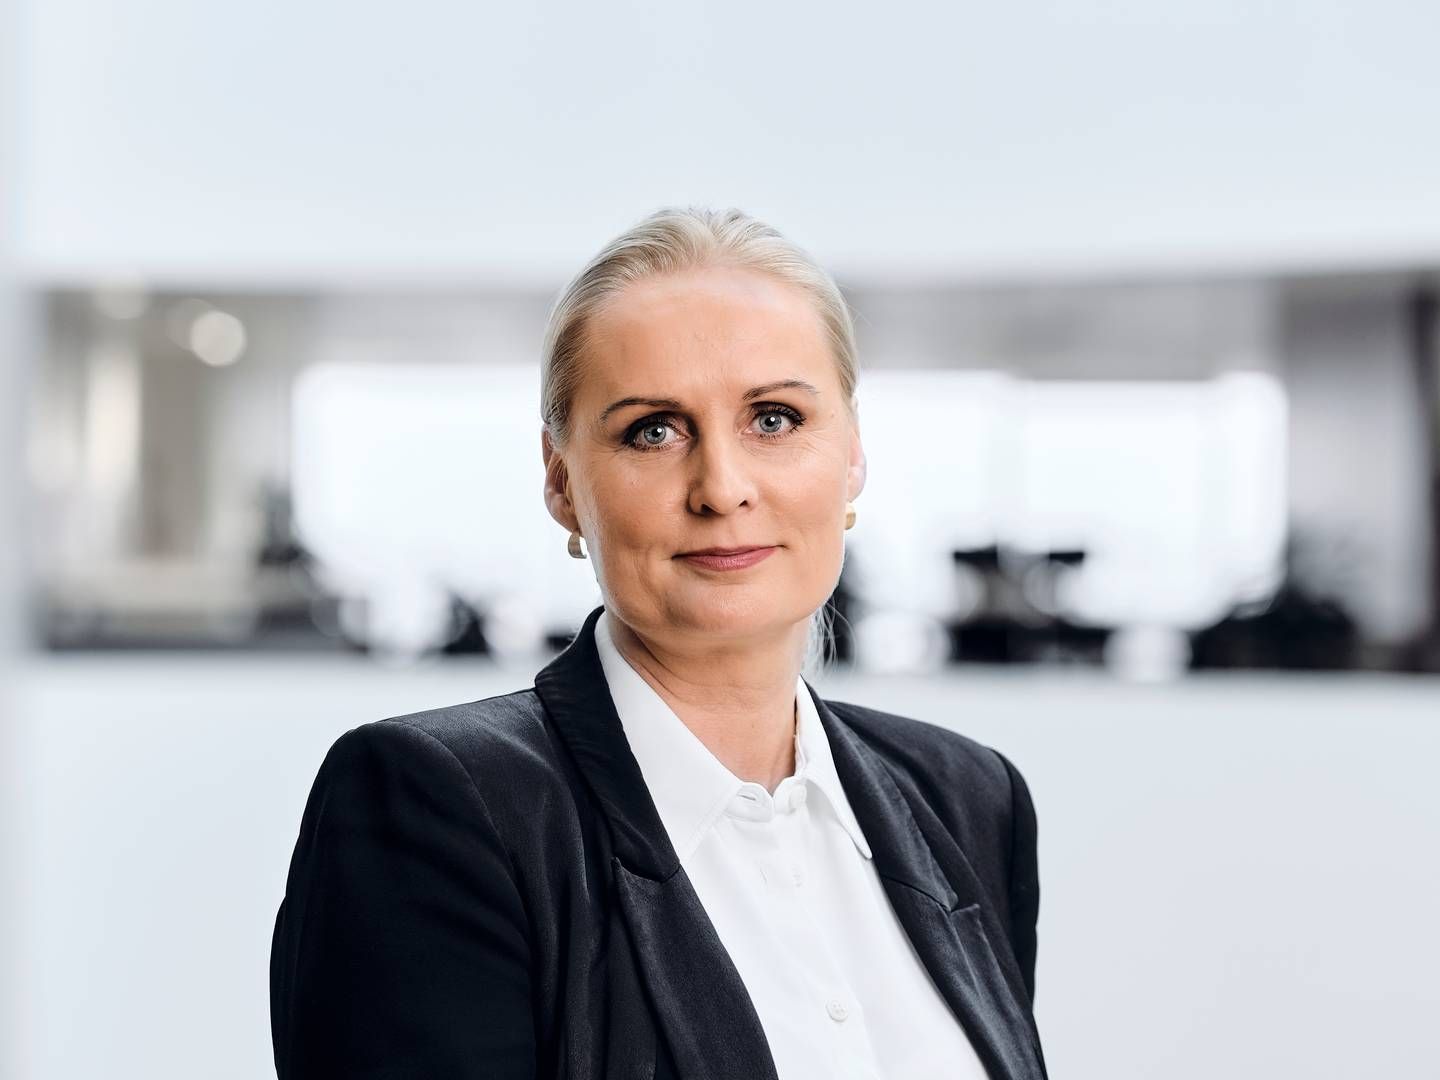 Mænd har generelt stadigvæk en større pensionsformue end kvinder, men spændet vil blive mindre spår Anne-Louise Lindkvist, kunderådgivningschef i Sampension. | Foto: Sampension